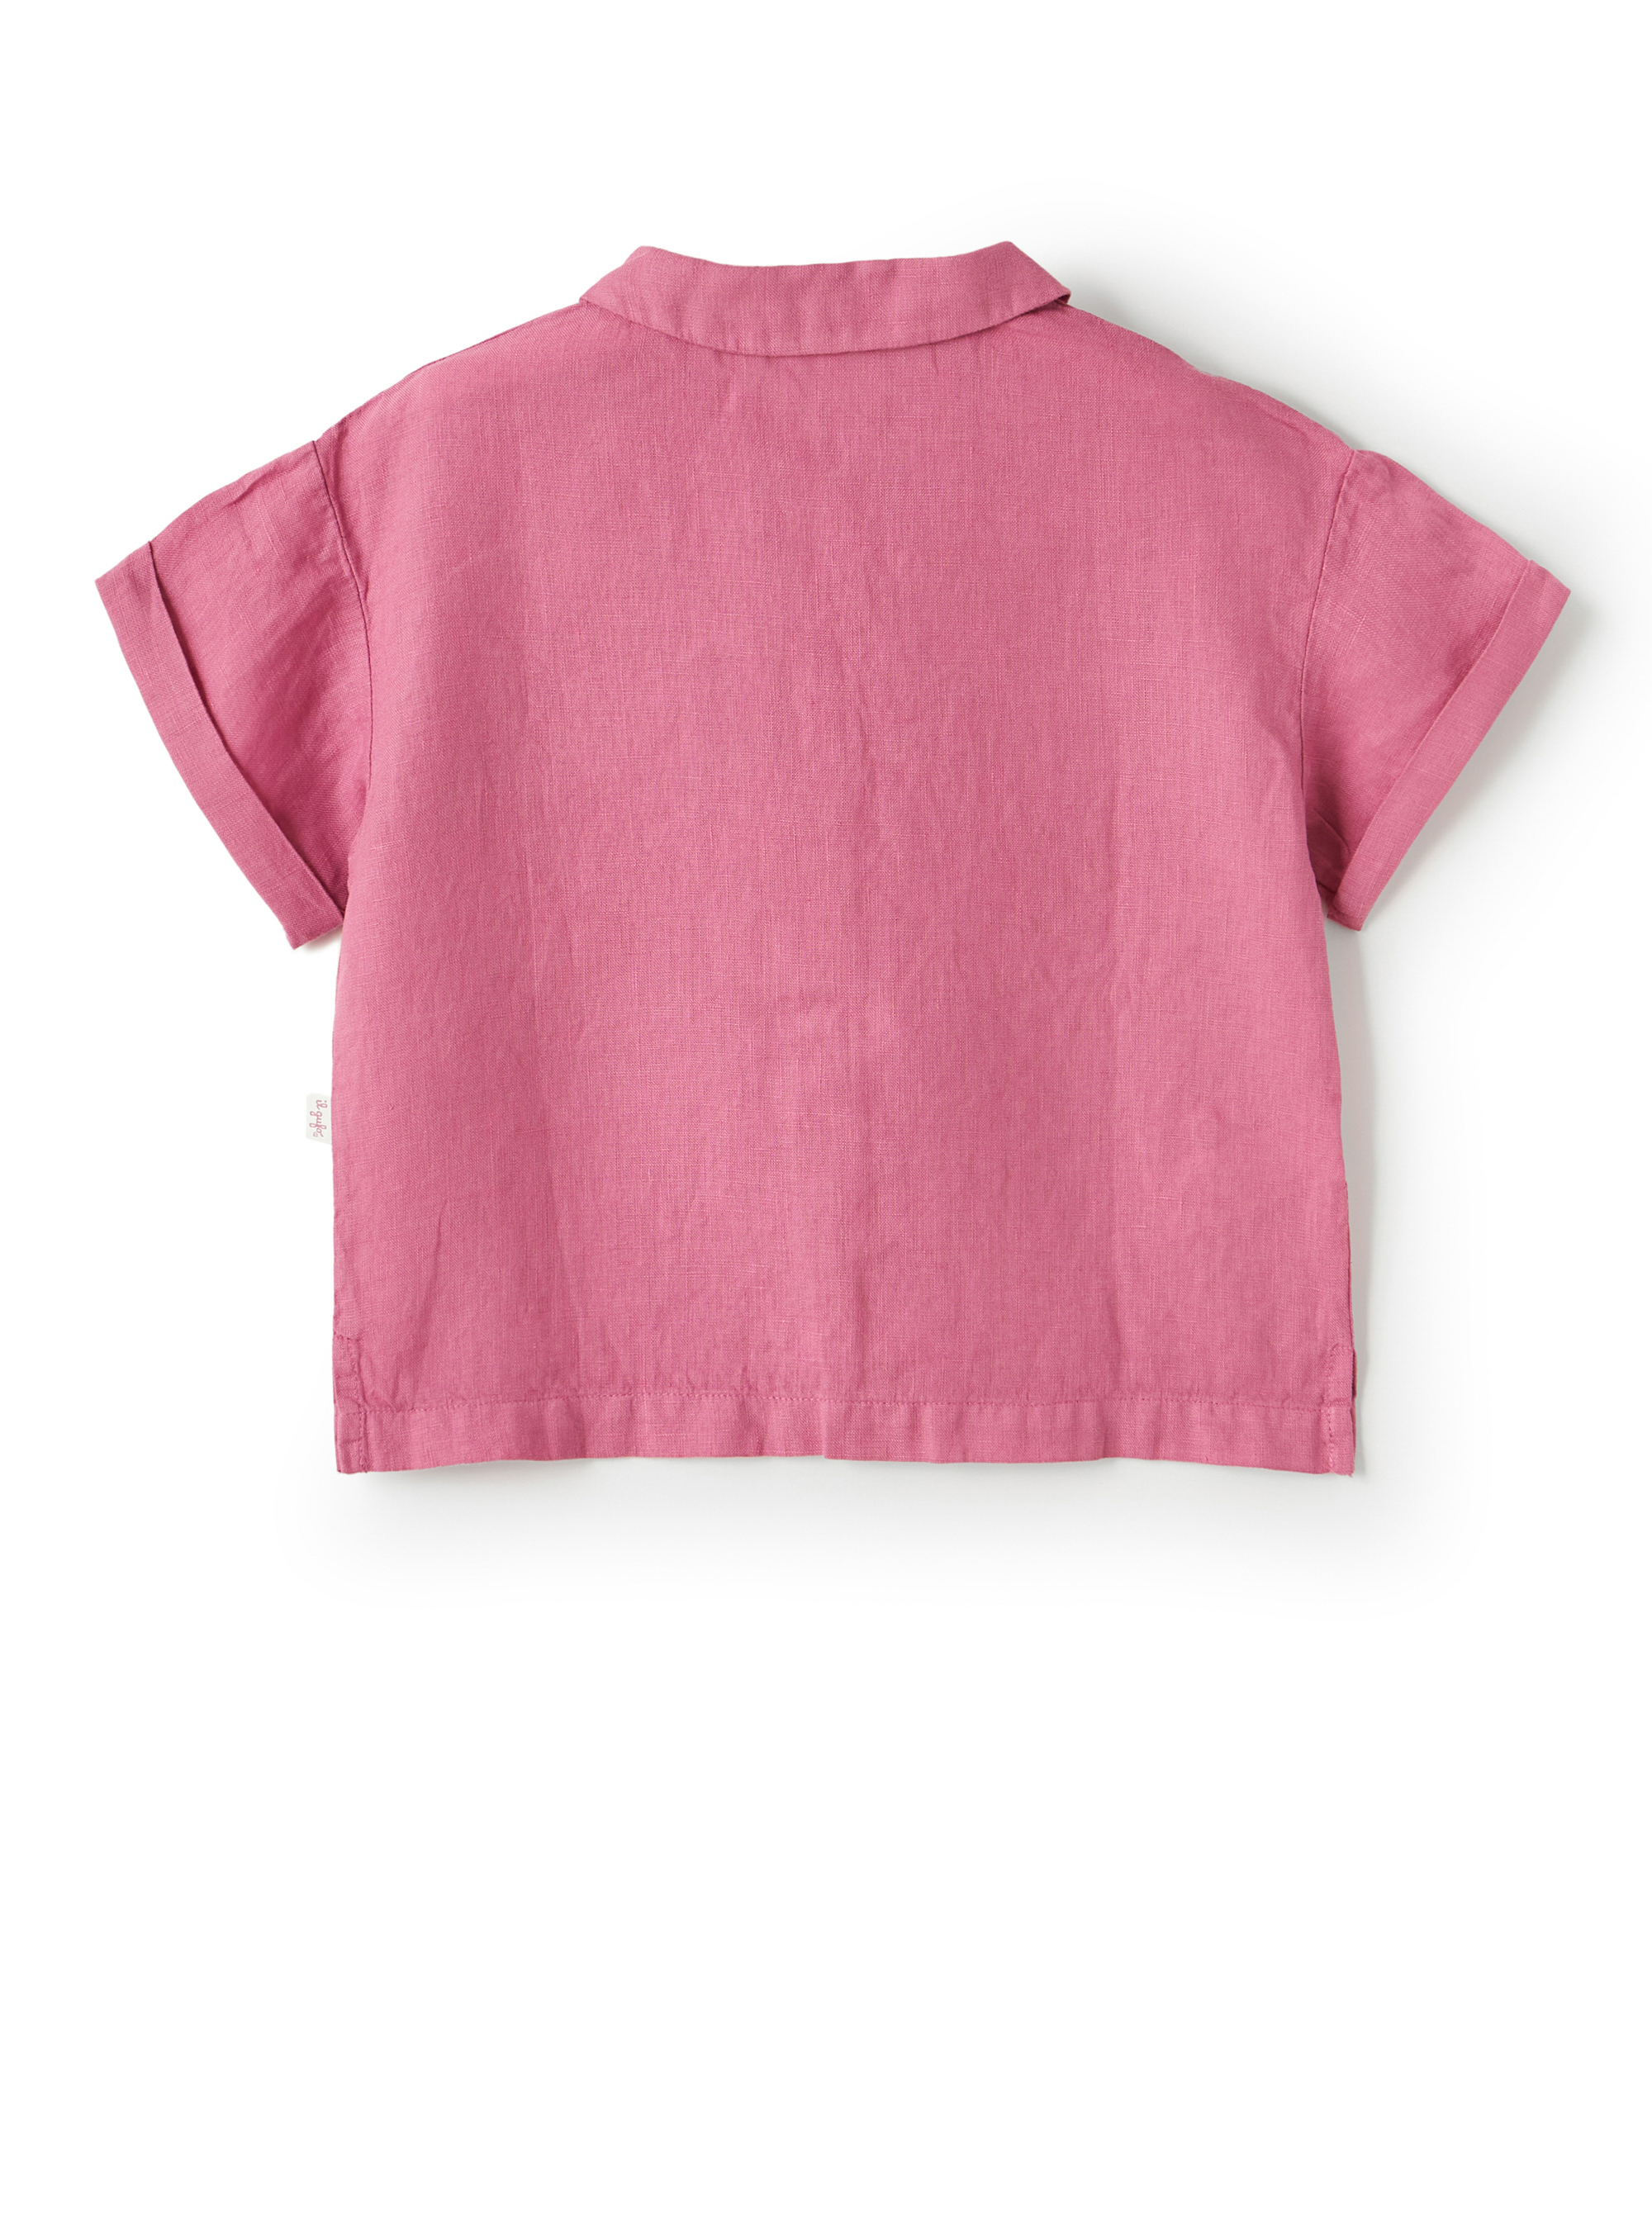 Lilafarbenes Leinenhemd mit Brusttasche - Fuchsie | Il Gufo